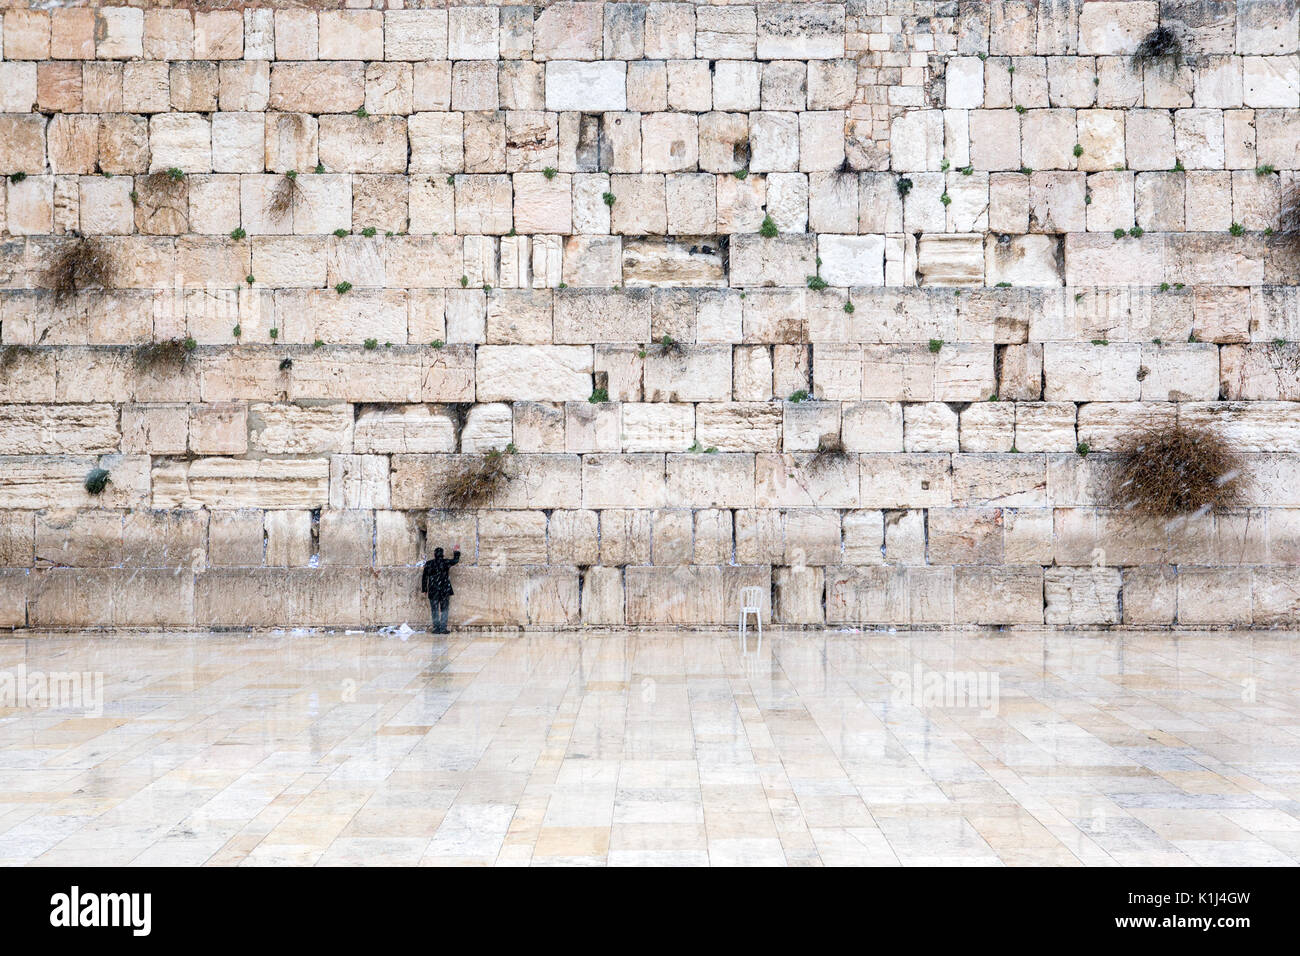 Il Muro occidentale di Gerusalemme, vuota di persone durante la neve Foto Stock